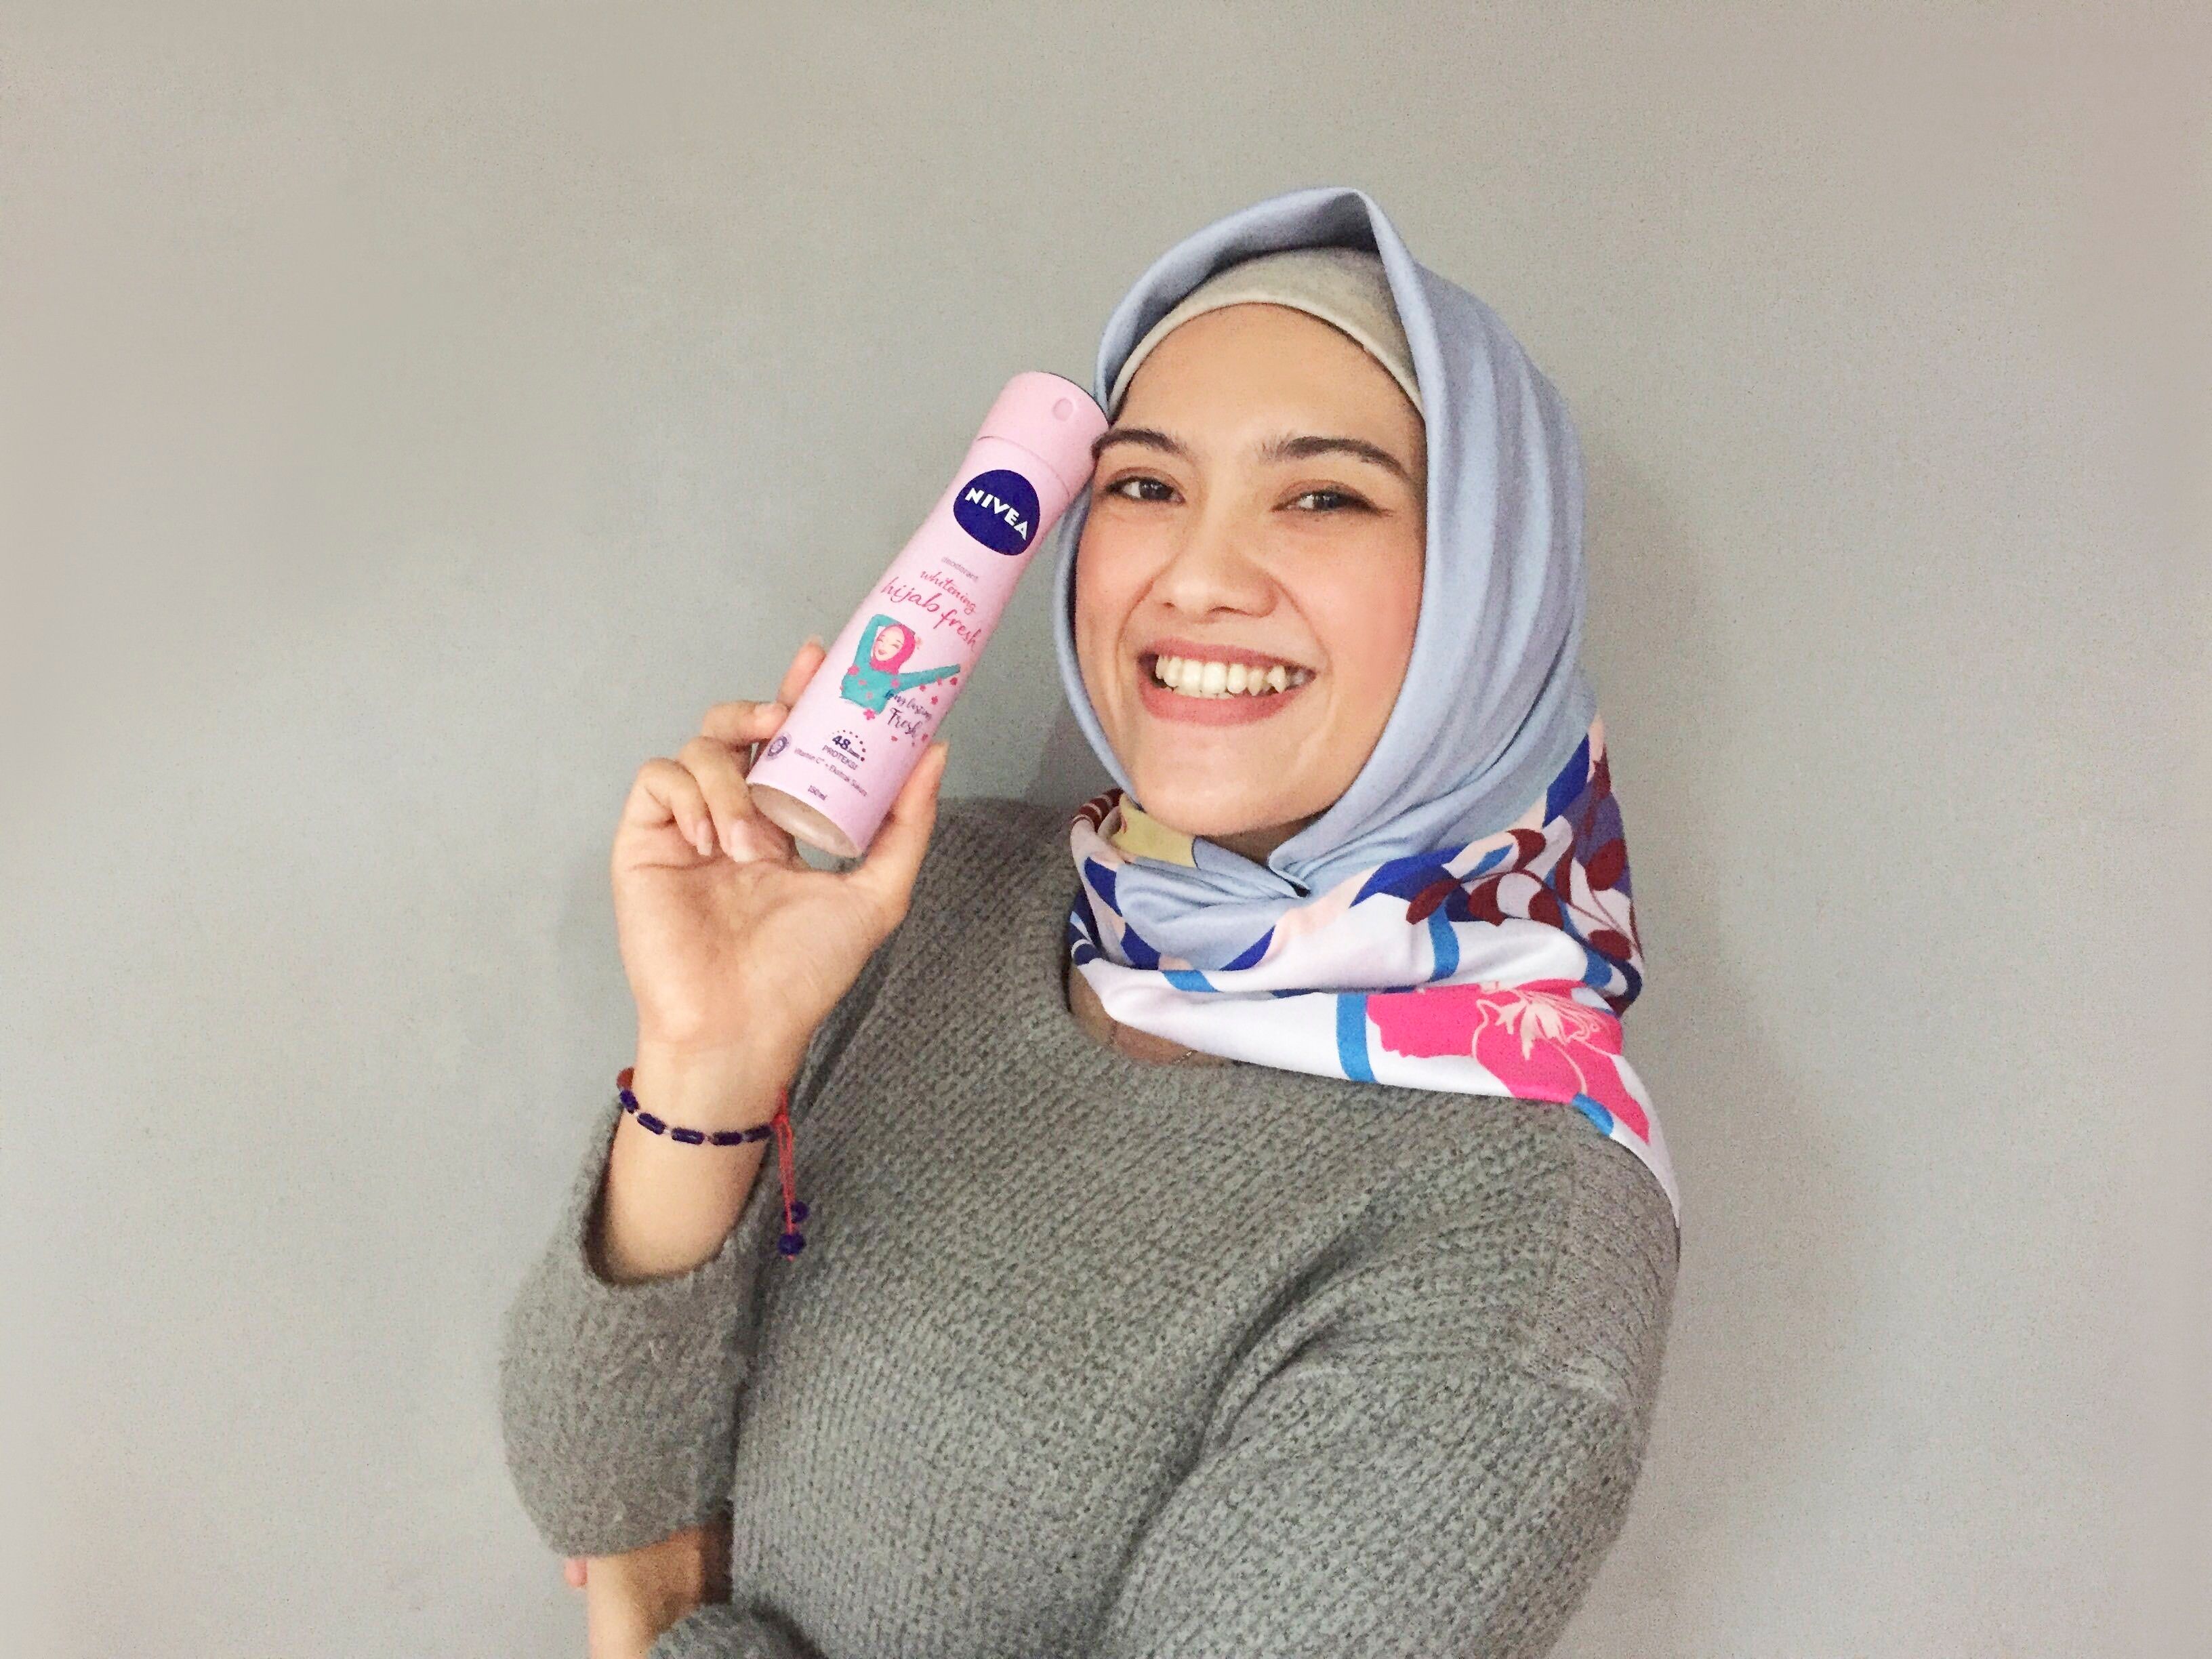 Review: Siap Sambut Ramadan dengan Rangkaian NIVEA Hijab Series